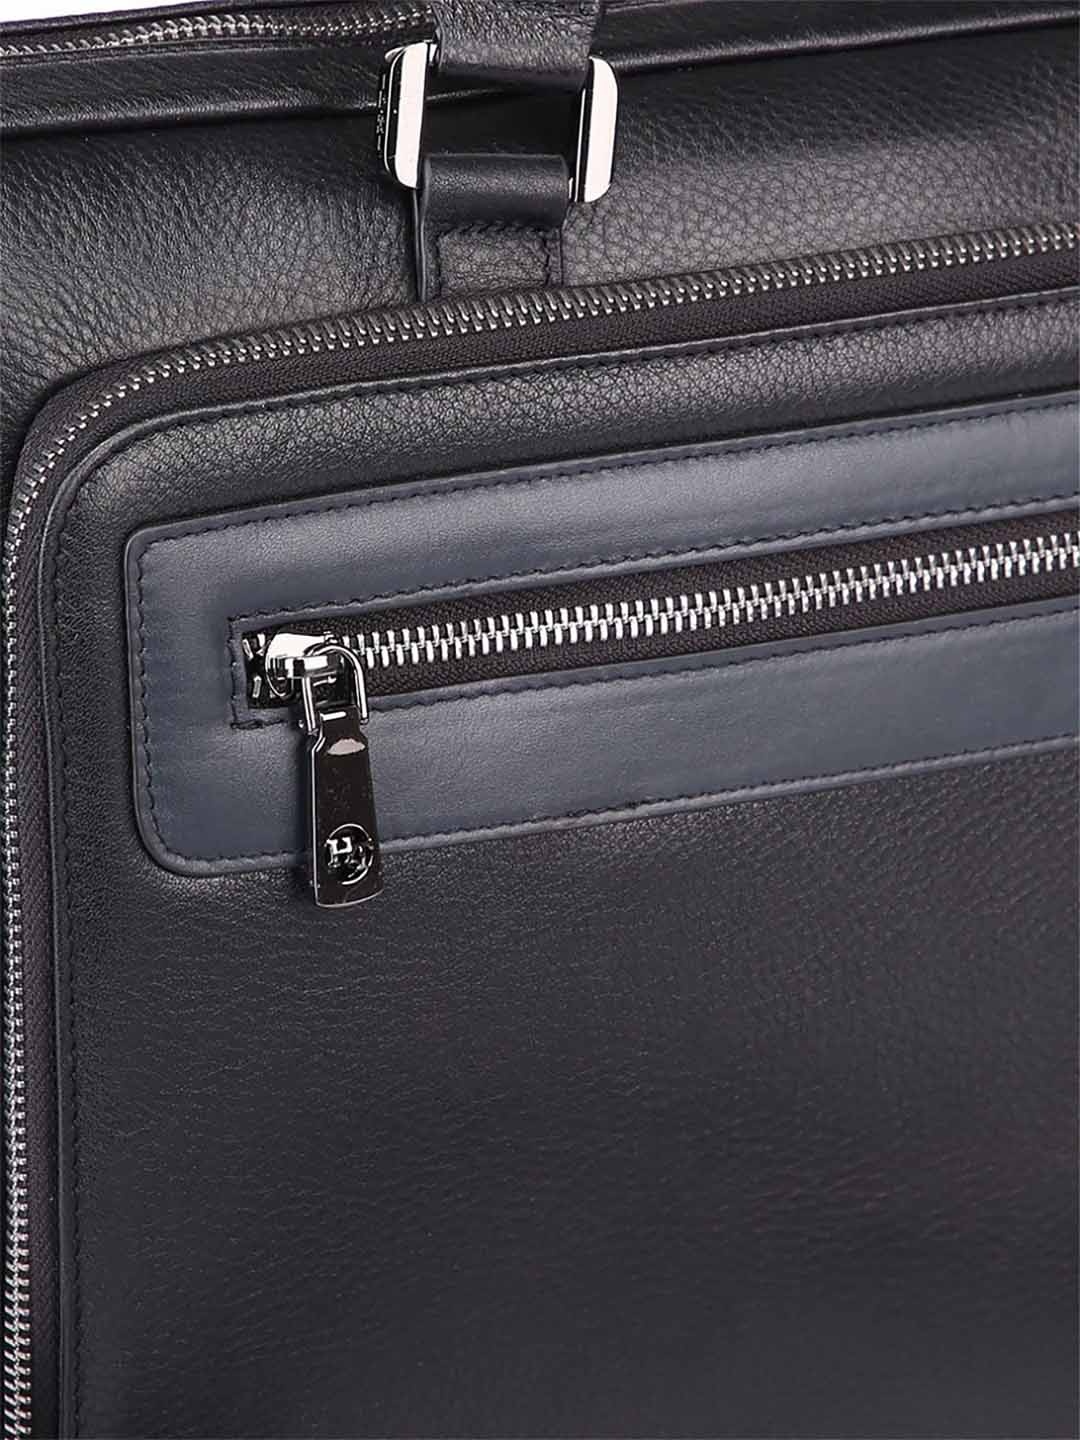 Фото Мужская бизнес сумка из мягкой зернистой кожи Деловые сумки (А4)